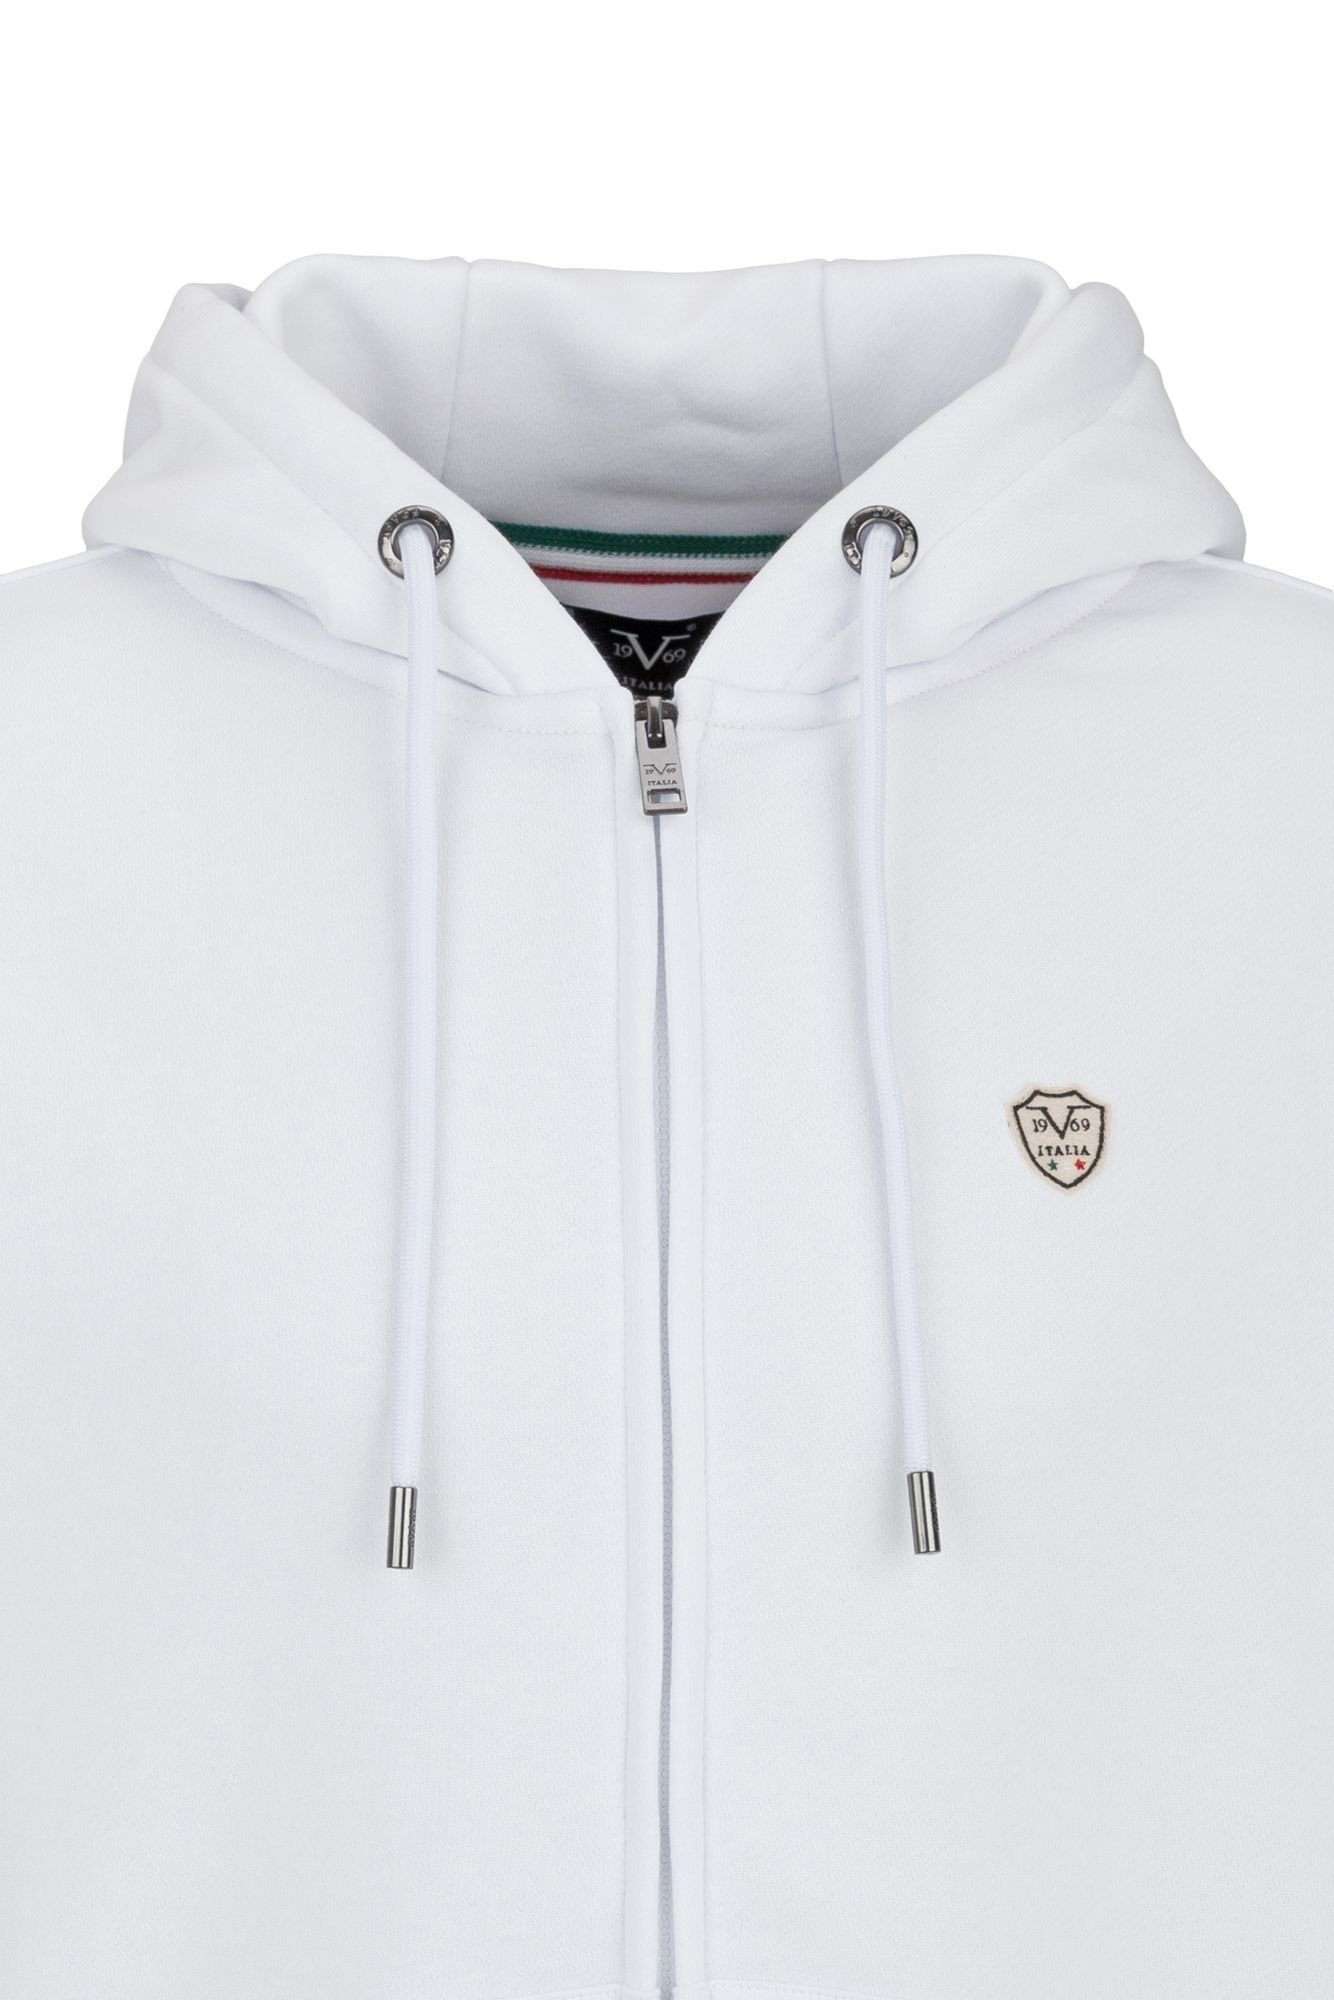 - Sweater by SRL Sportivo Versace by 19V69 Italia Shield Versace Tom